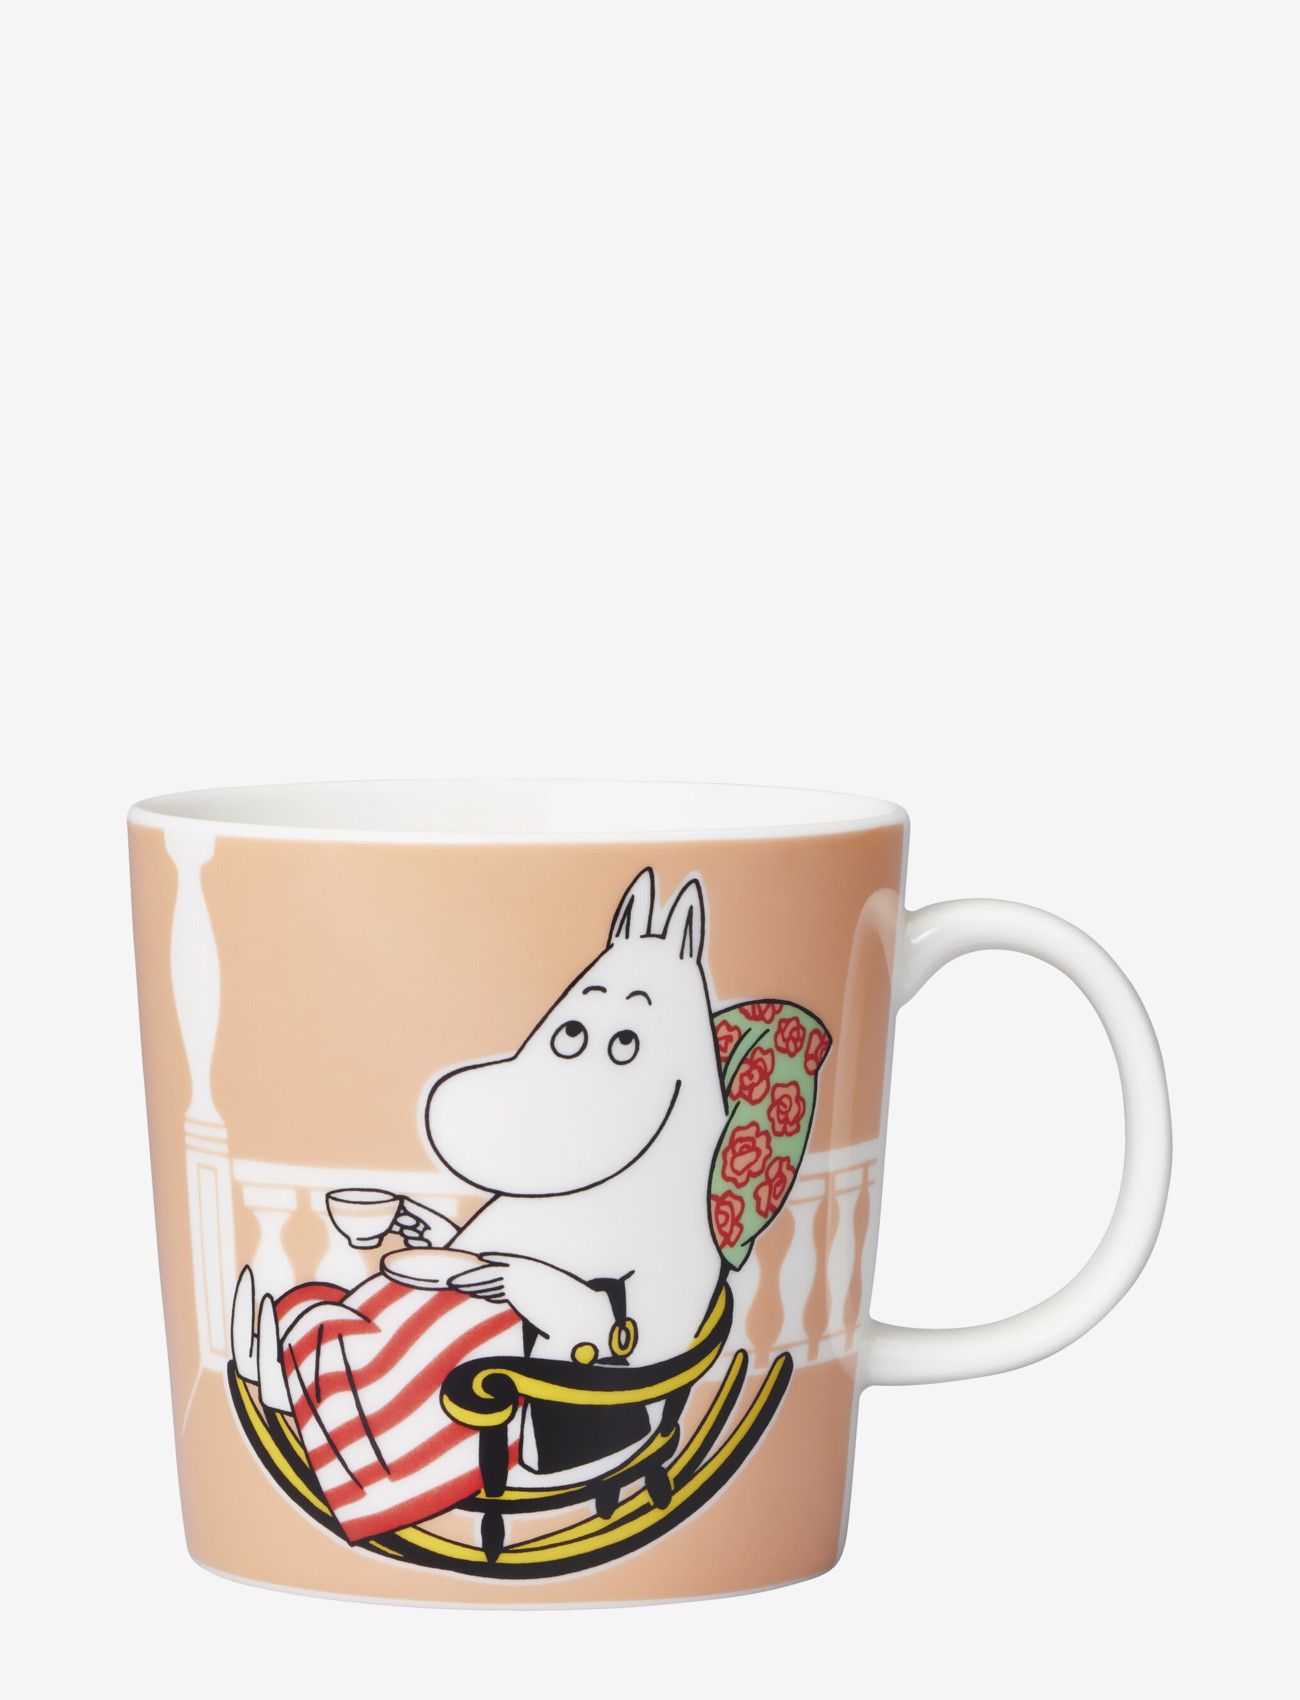 Arabia - Moomin mug 0,3L Moominmamma marmalade - pink - 1